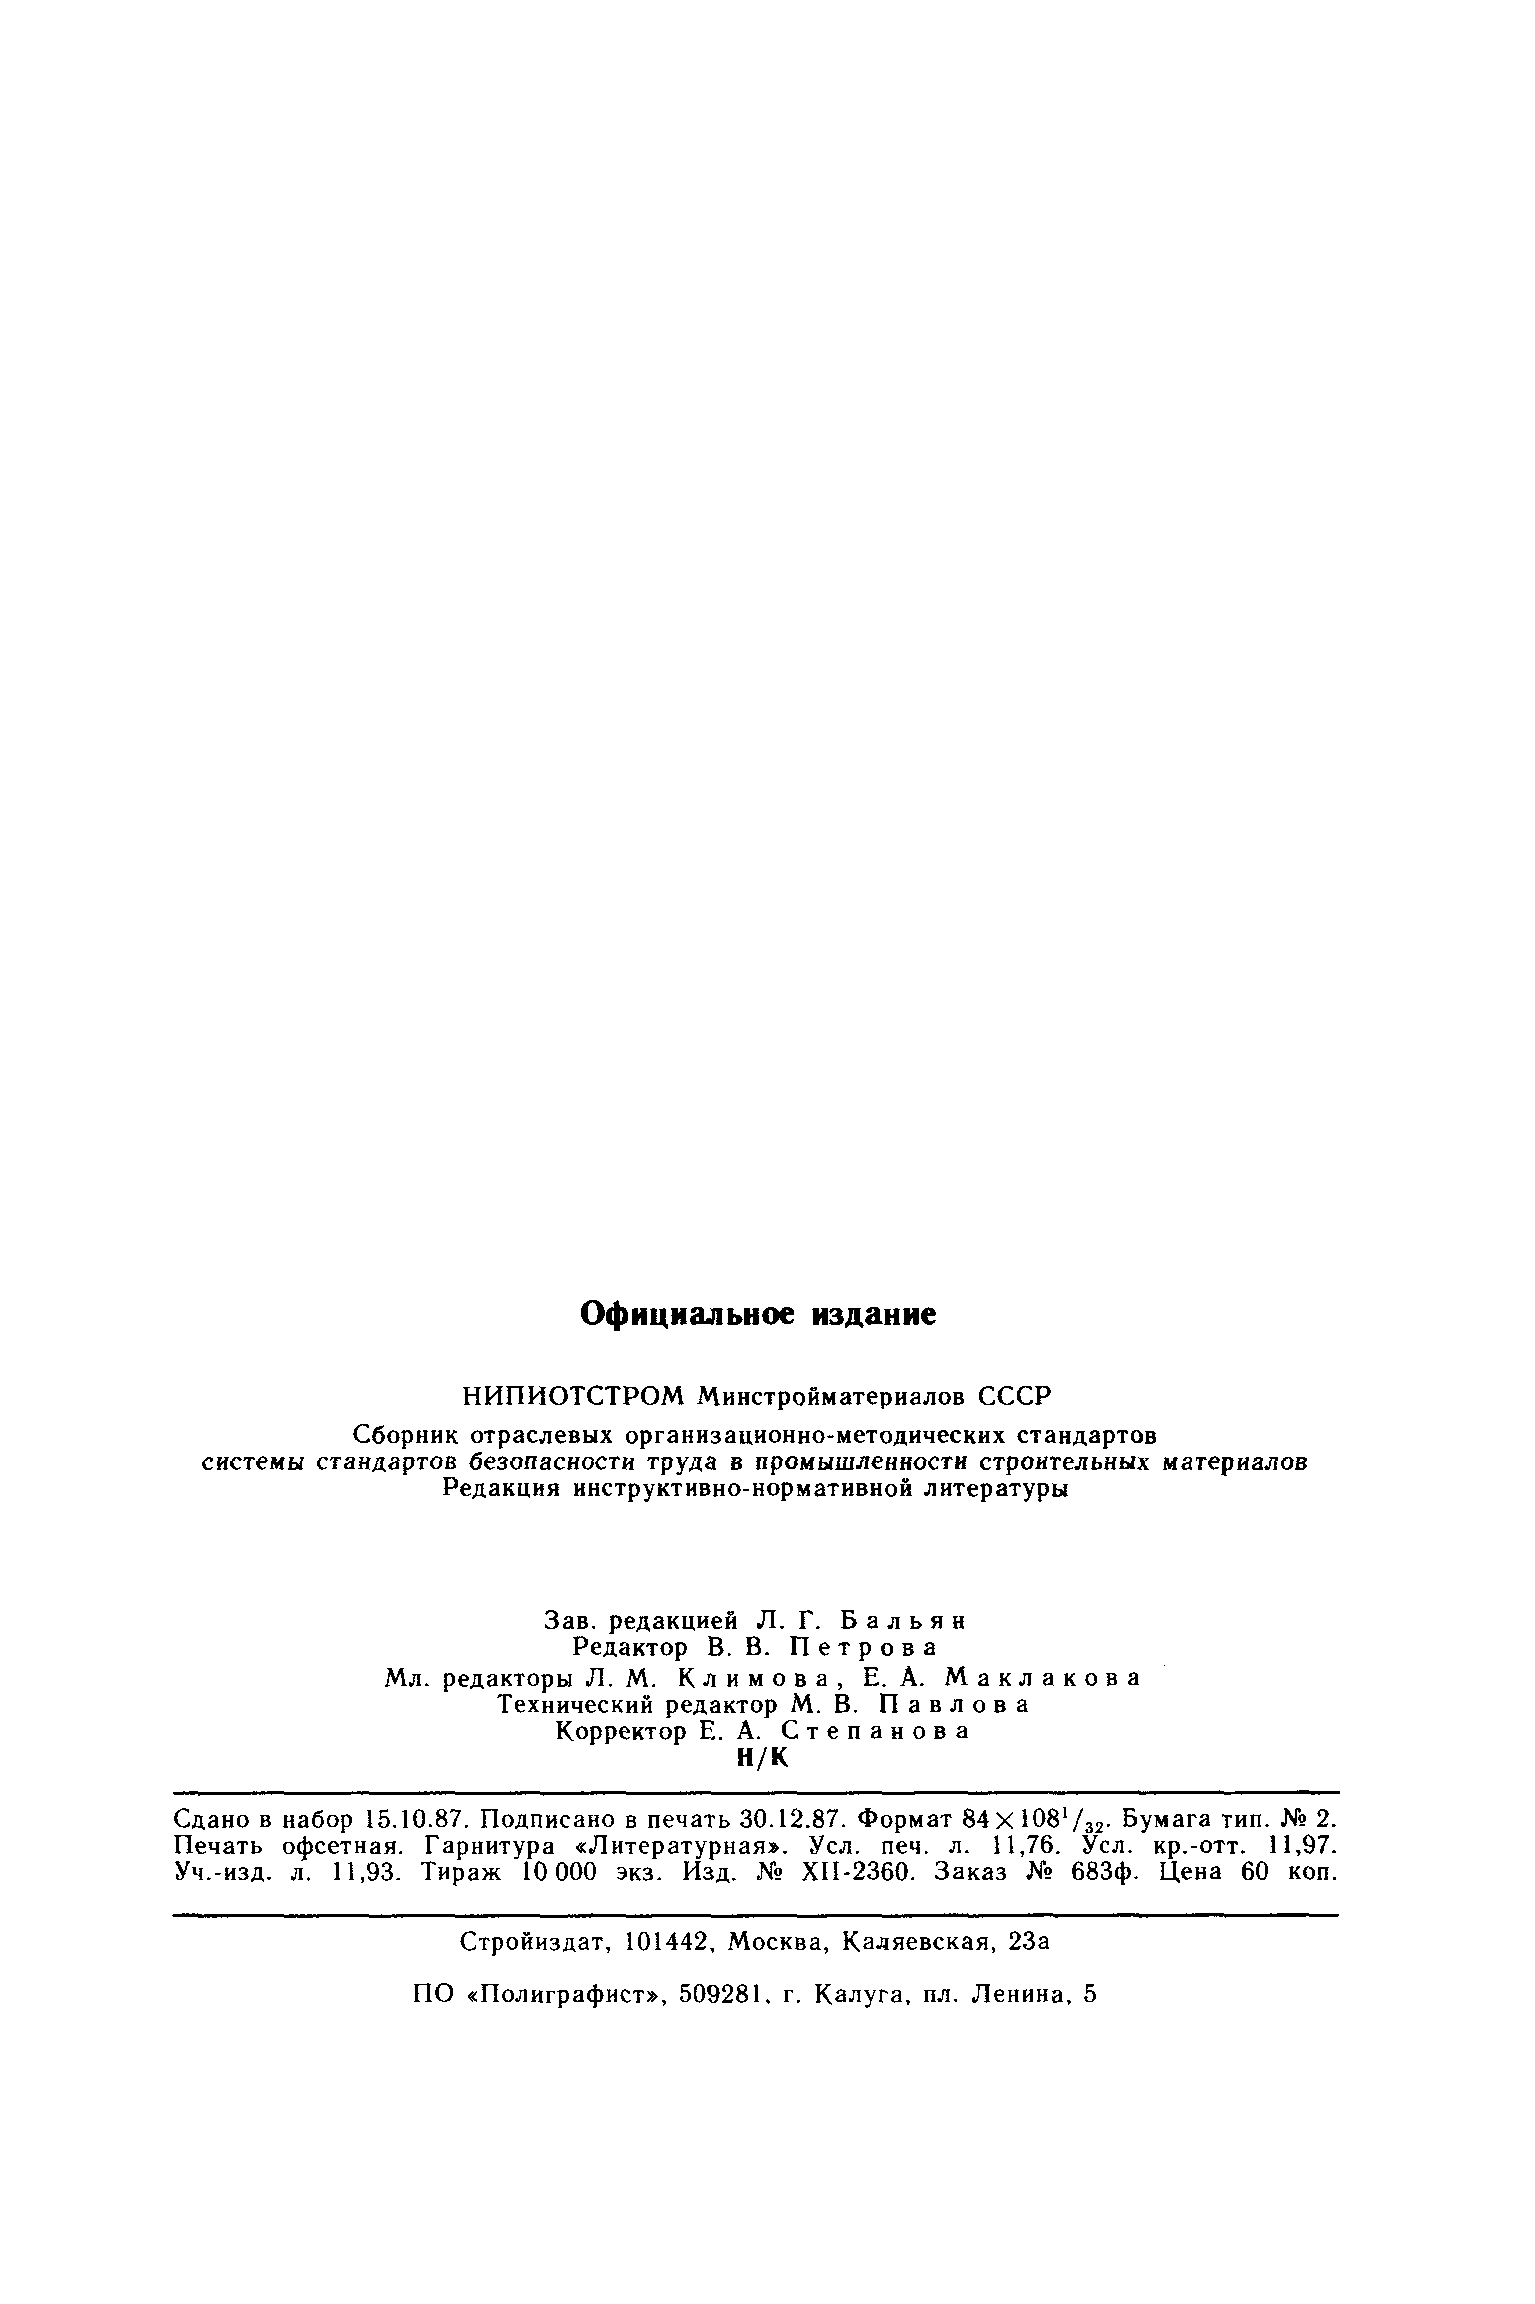 ОСТ 21.112.0.002-82